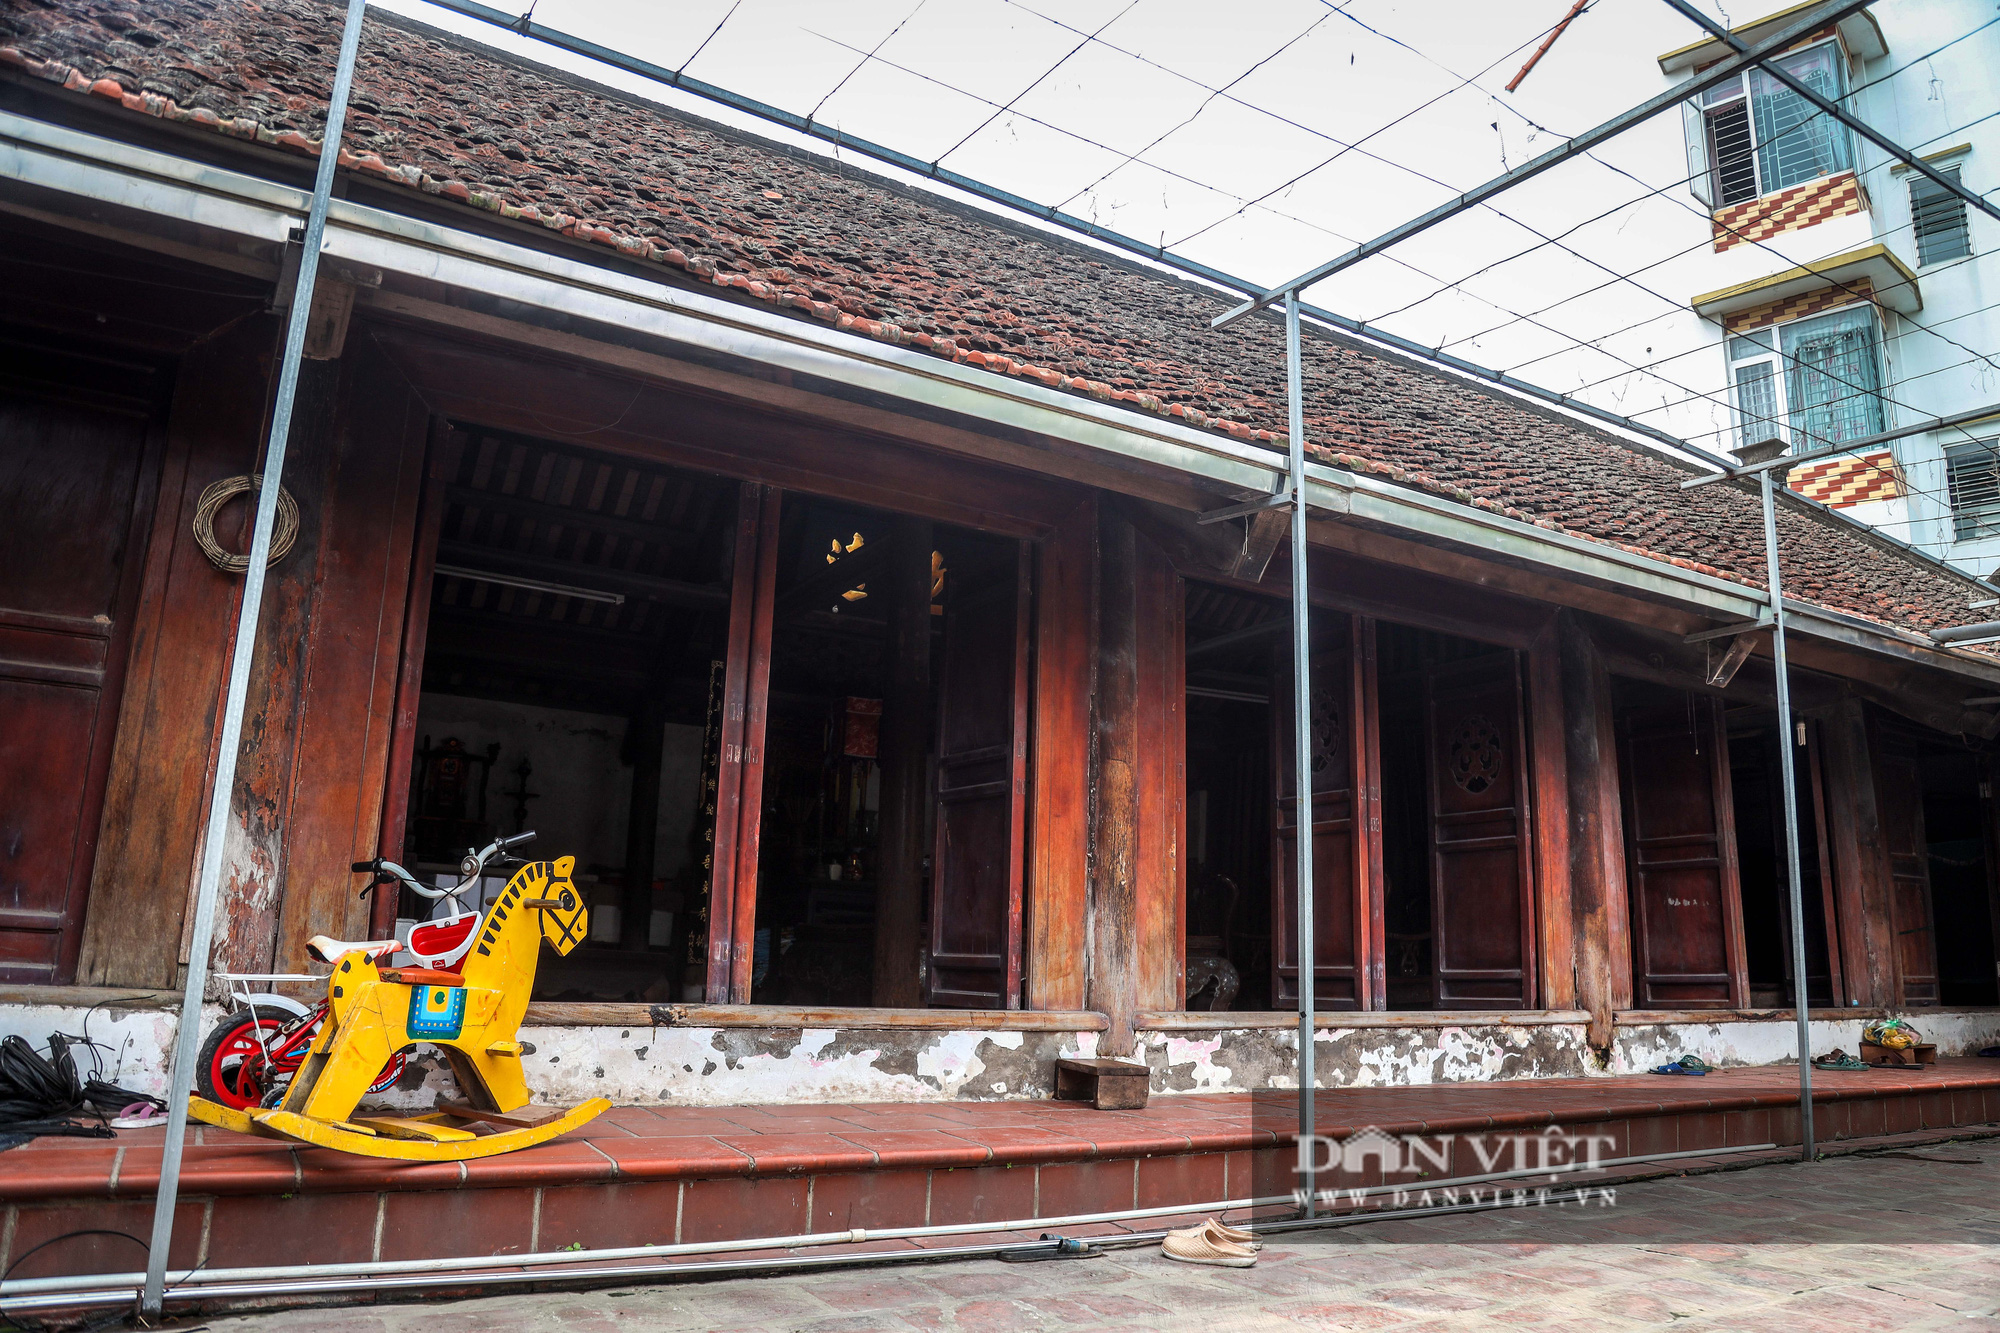 Kỳ lạ ngôi nhà xây mất 1 đêm, hơn 300 năm vẫn vững chãi ở Hà Nội - Ảnh 12.